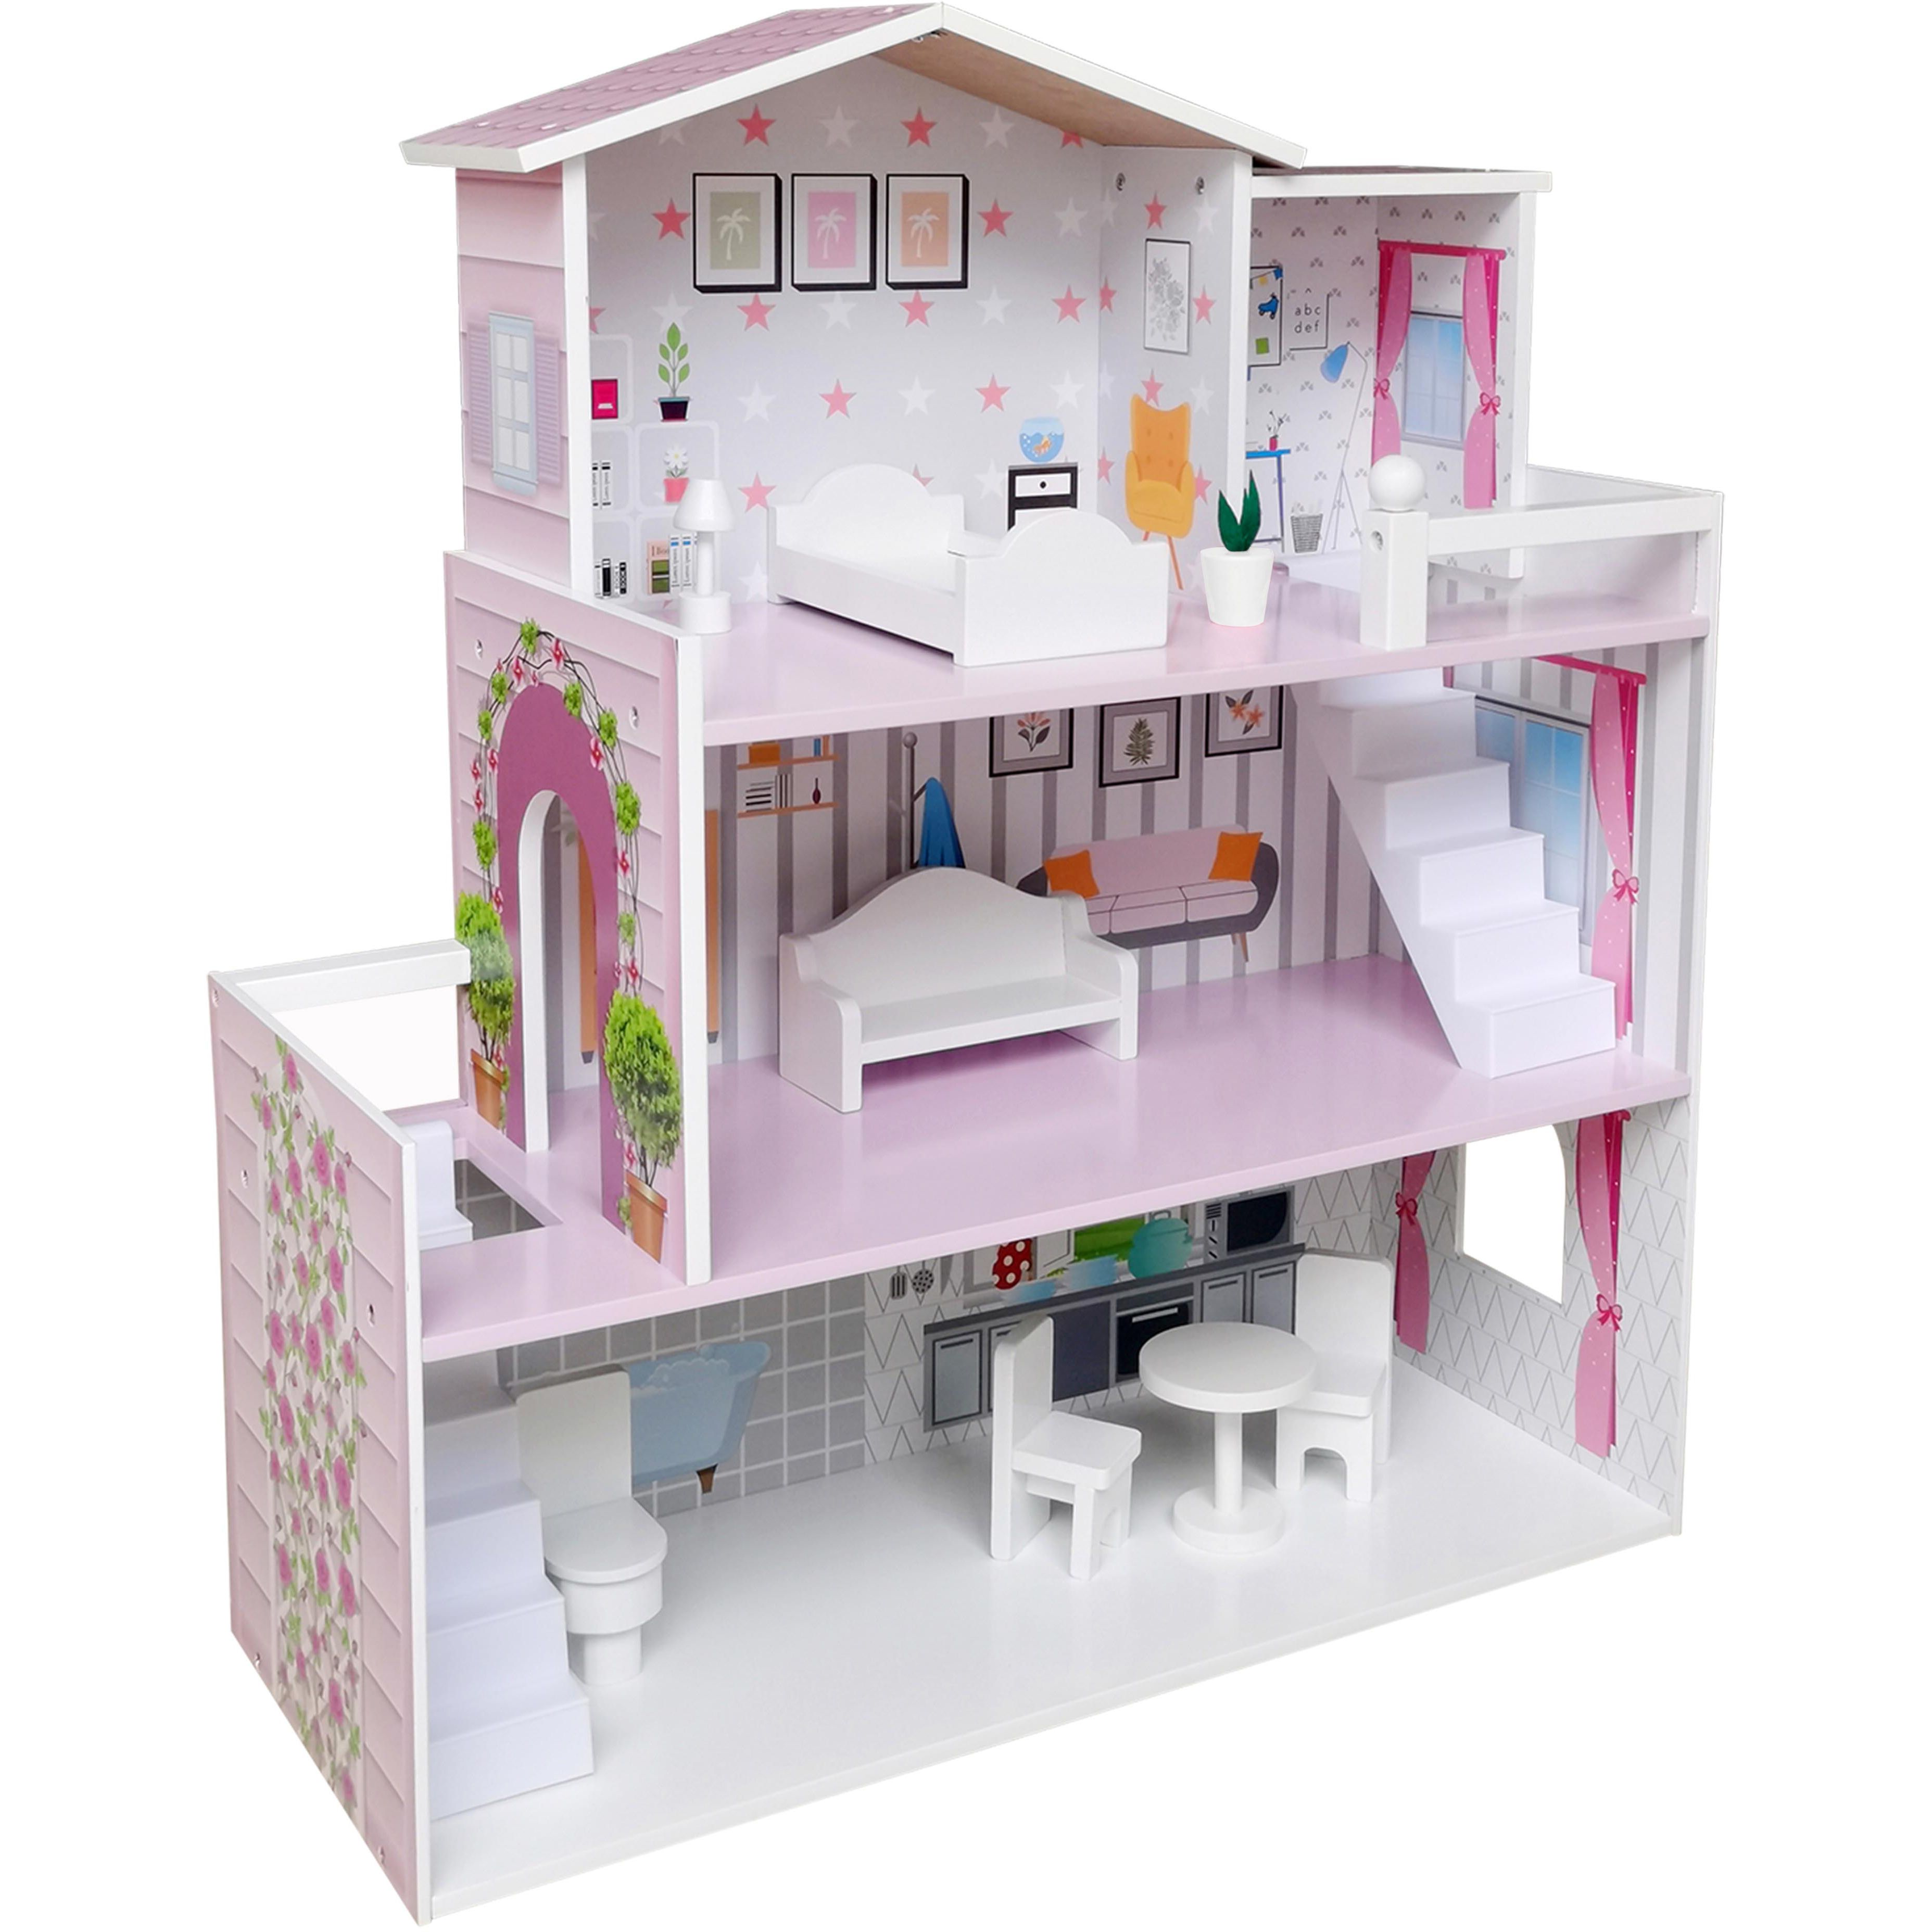 Іграшковий будиночок дерев'яний FreeON рожевий (47290) - фото 5